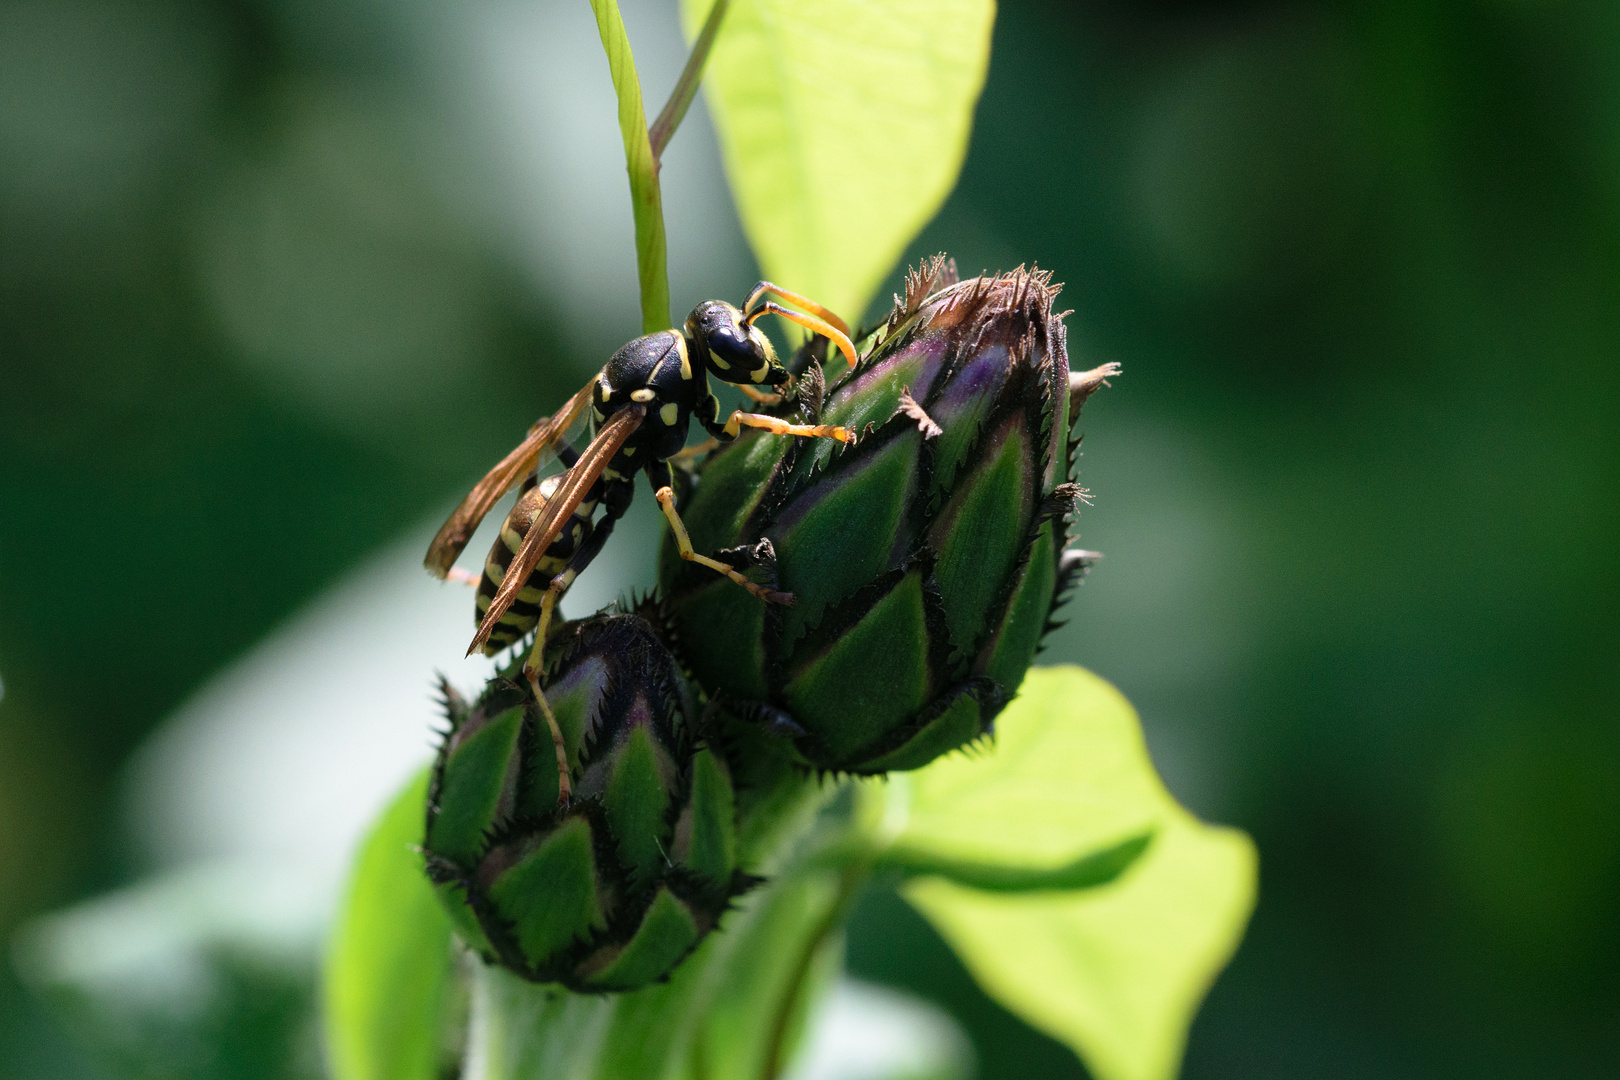 Gemeine Wespe (Vespula vulgaris), common wasp